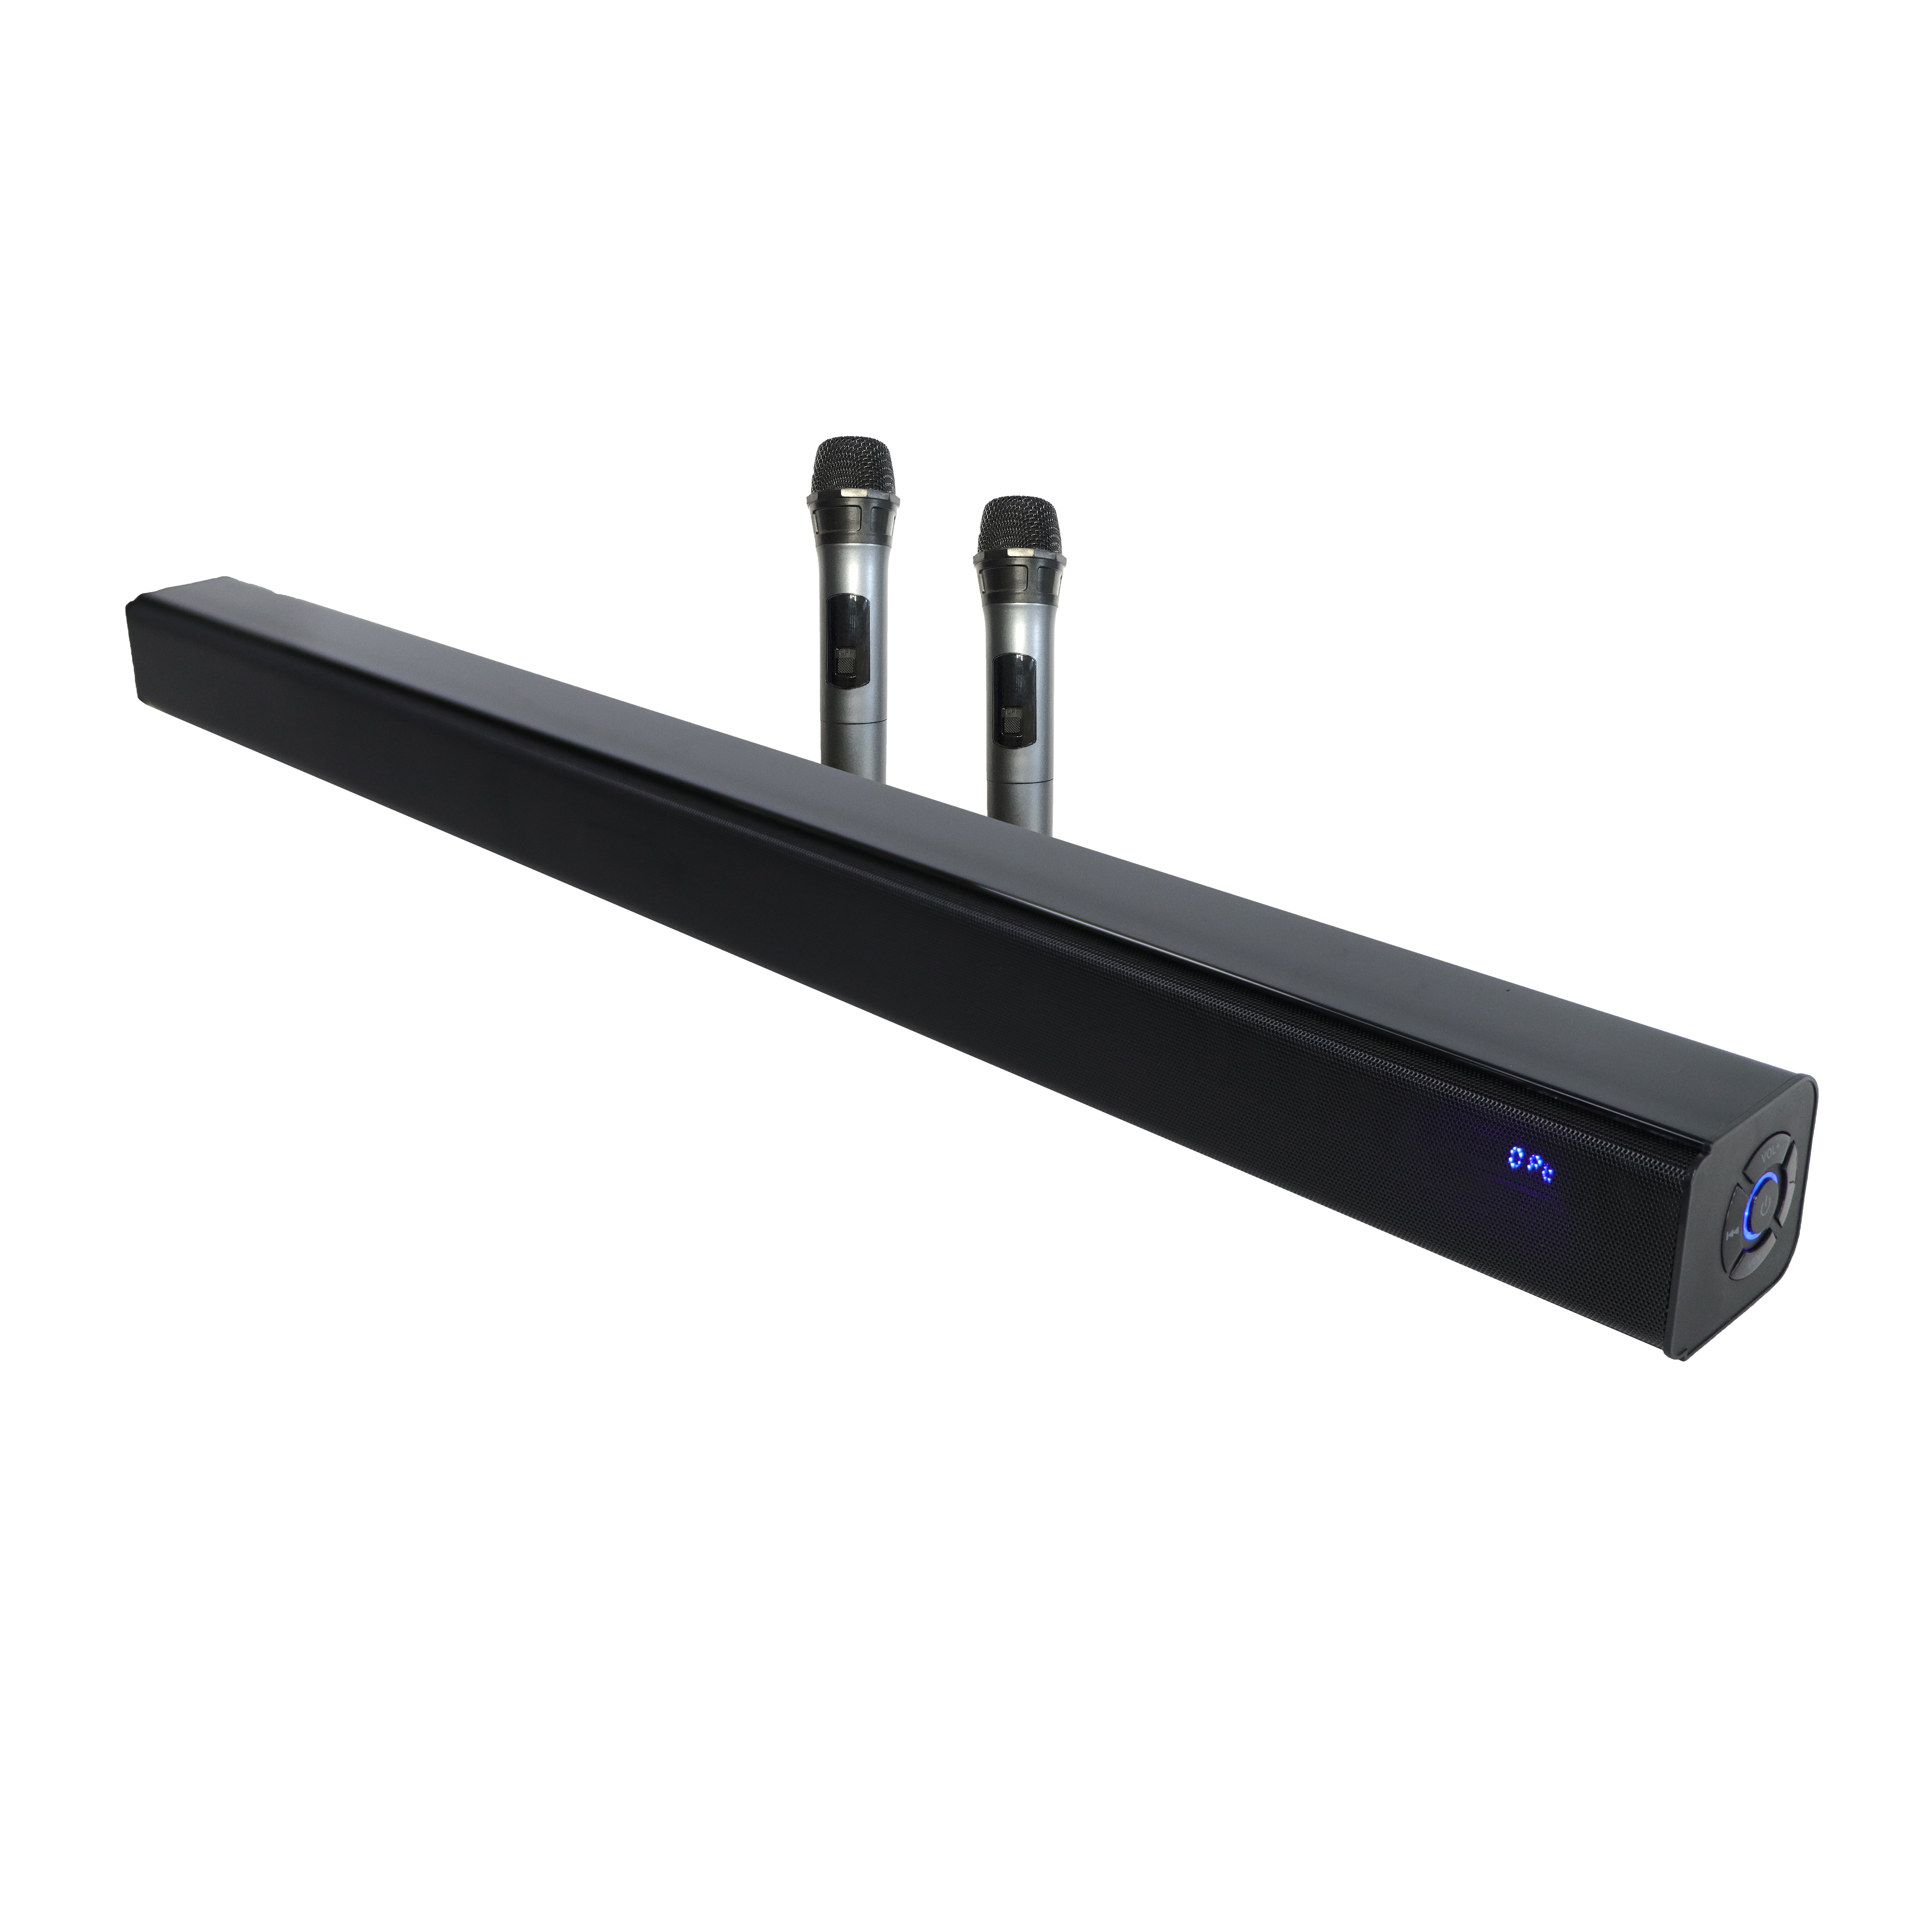 2.0ch Soundbar with Bluetooth USB AUX Optical HDMI ARC LED display Karaoke